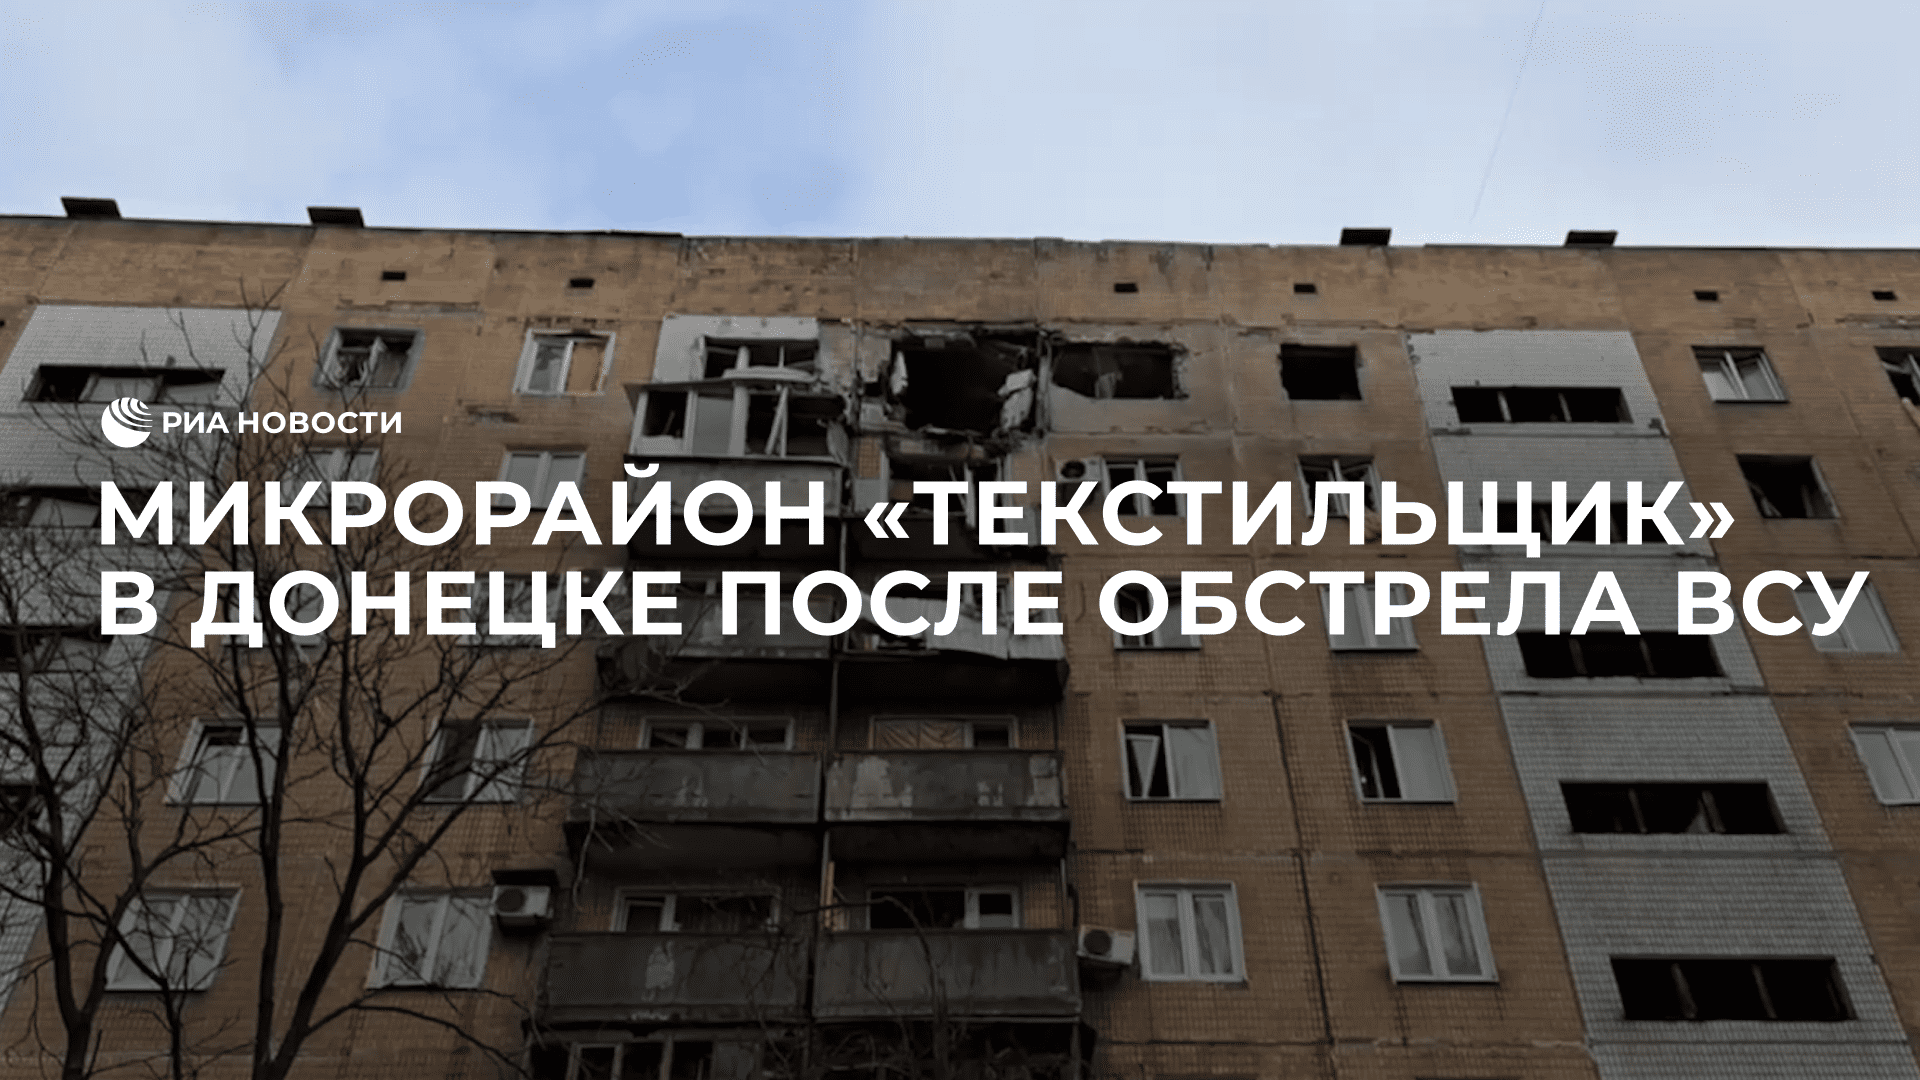 Микрорайон "Текстильщик" в Донецке после обстрела ВСУ